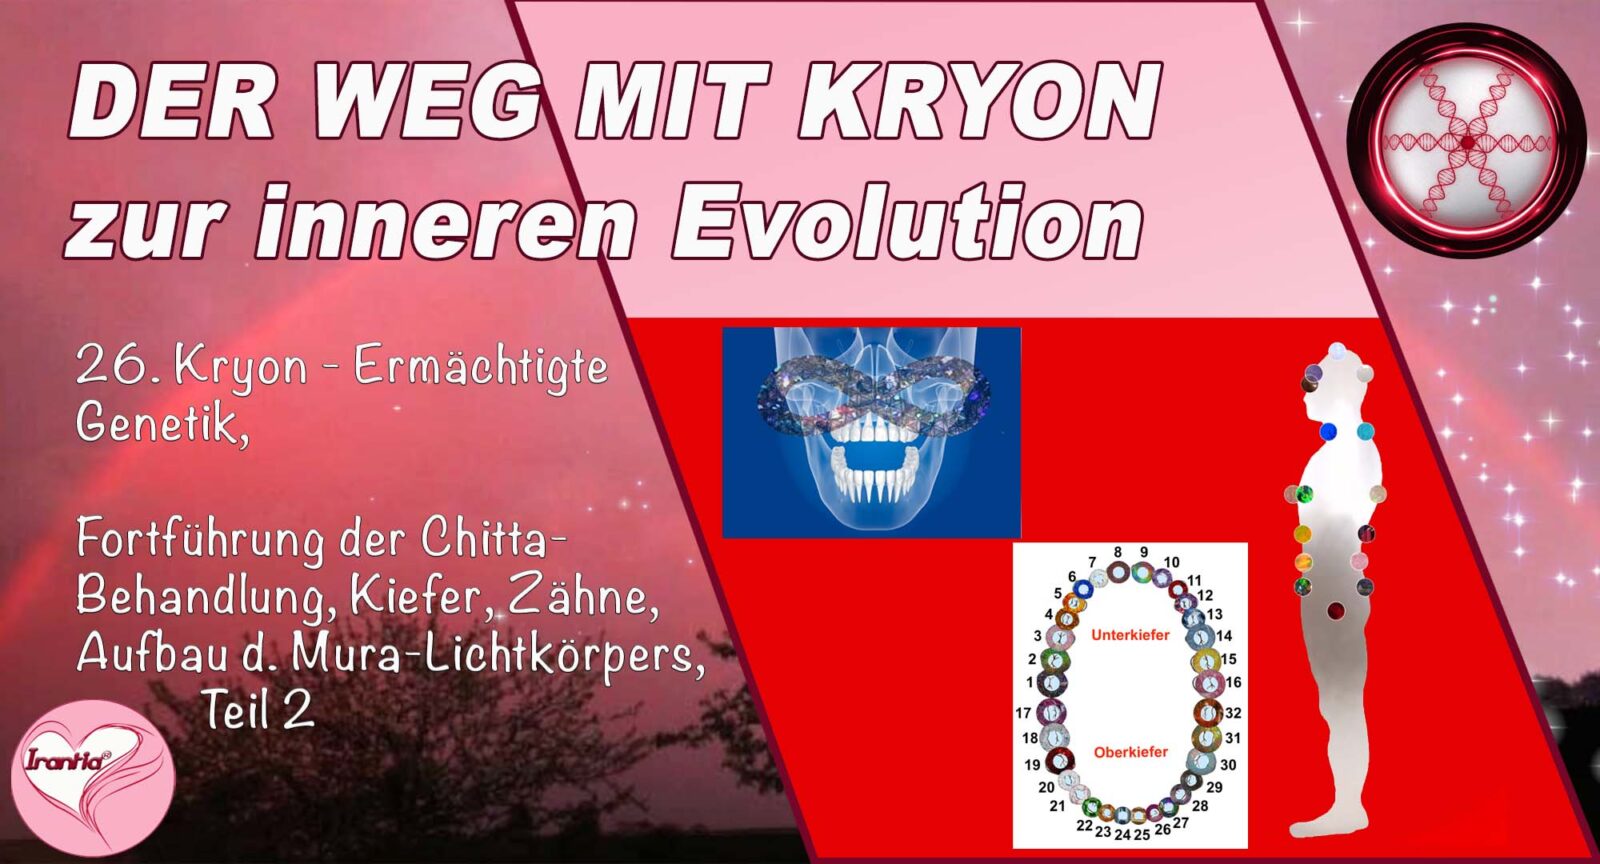 26. Der Weg mit Kryon zur inneren Evolution, Ermächtigte Genetik, Fortführung der Chitta-Behandlung, Kiefer, Zähne, Aufbau des Mura-Lichtkörpers, Teil 2